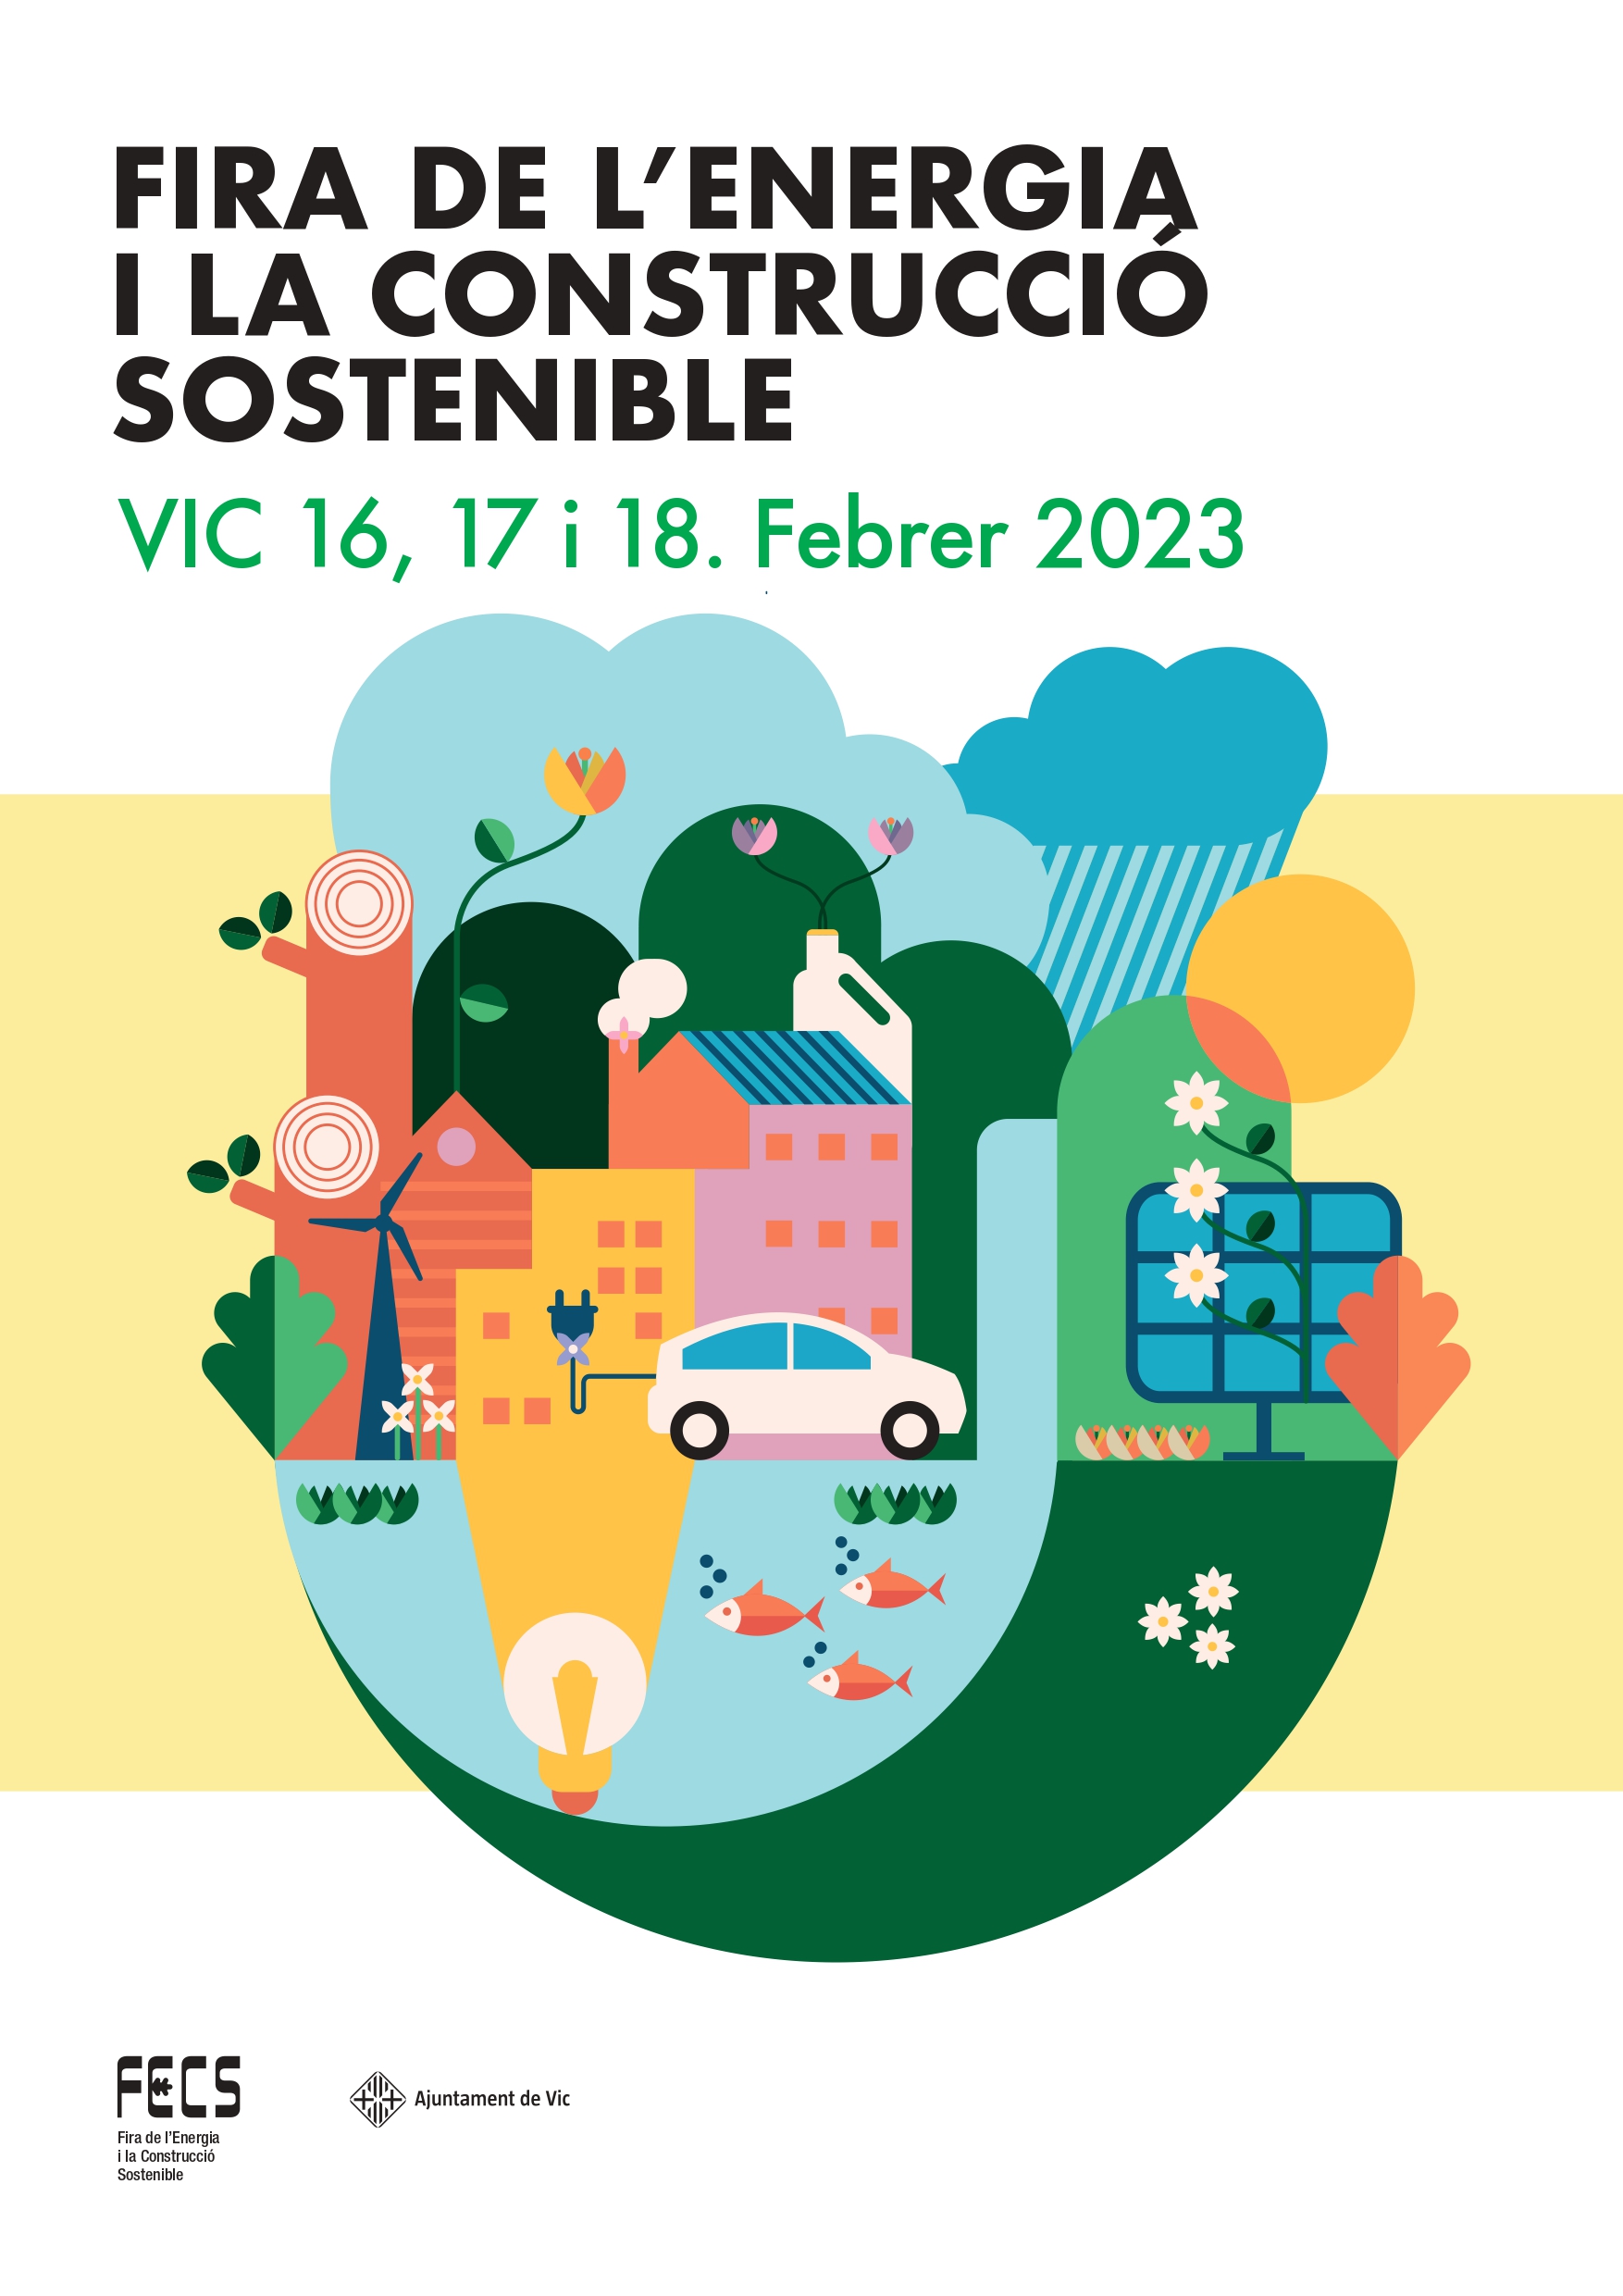 FECS (Fira de l'Energia i la Construcció Sostenible) 2023